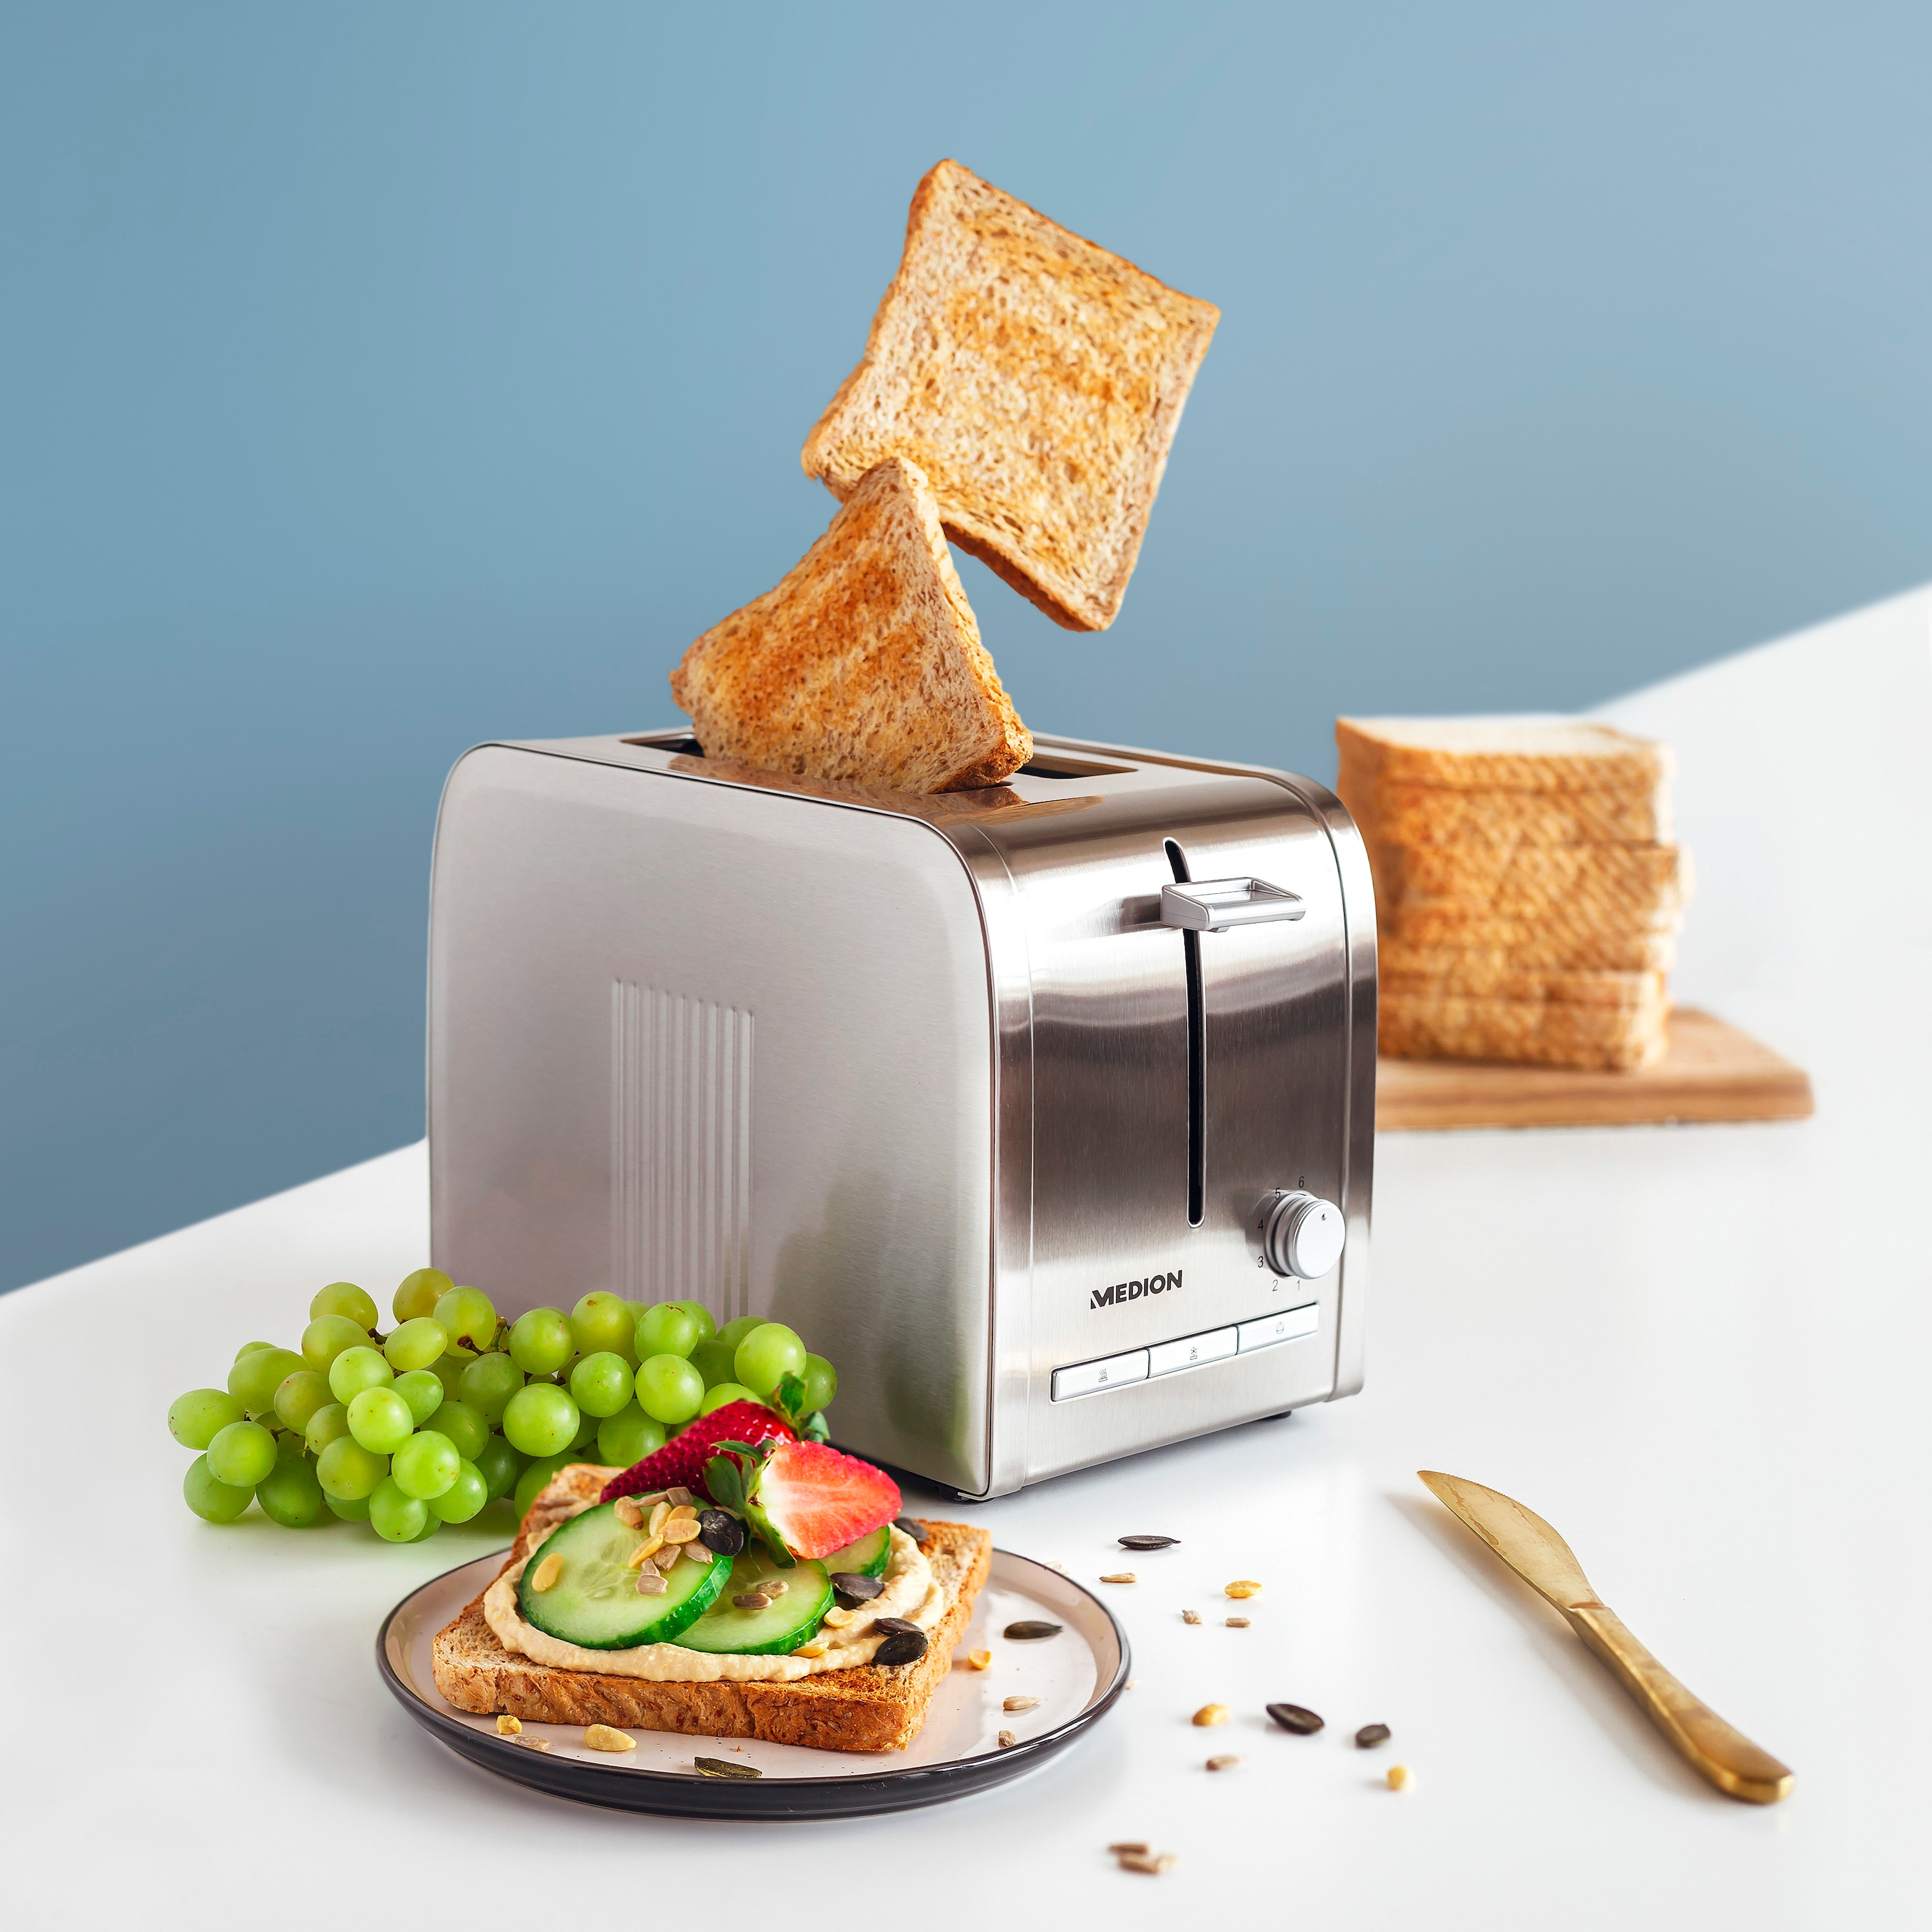 MEDION® Edelstahl-Toaster MD 16232, Edelstahlgehäuse, 870 Watt, Aufwärm-, Auftau- und Stopptaste, Bräunungsgrad-Regler